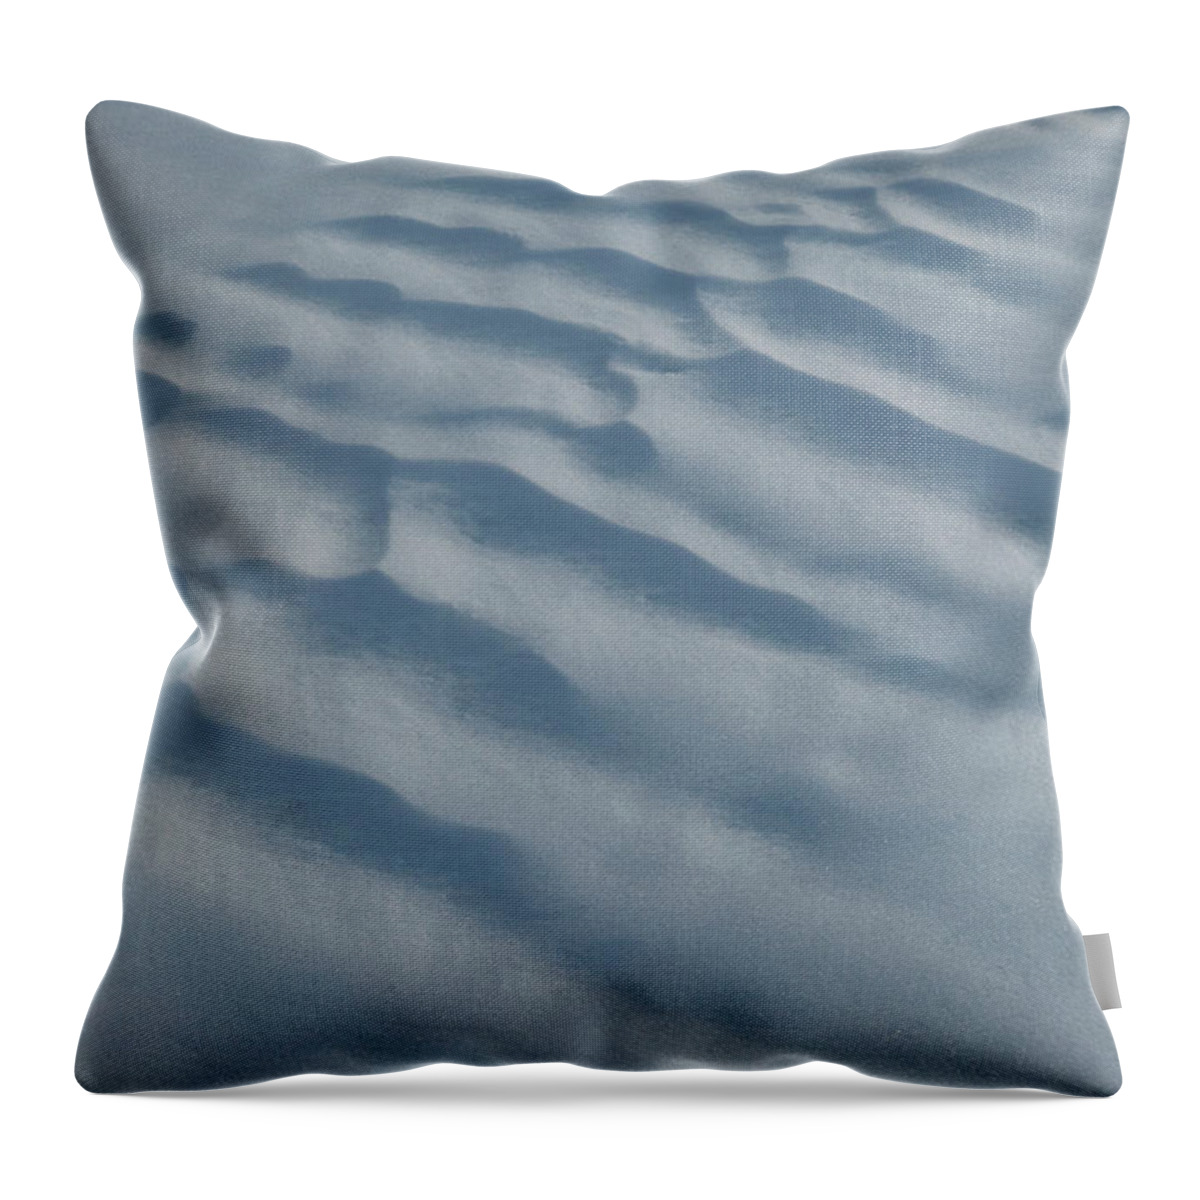 Texture Throw Pillow featuring the photograph Snowdrift Texture by Karen Rispin